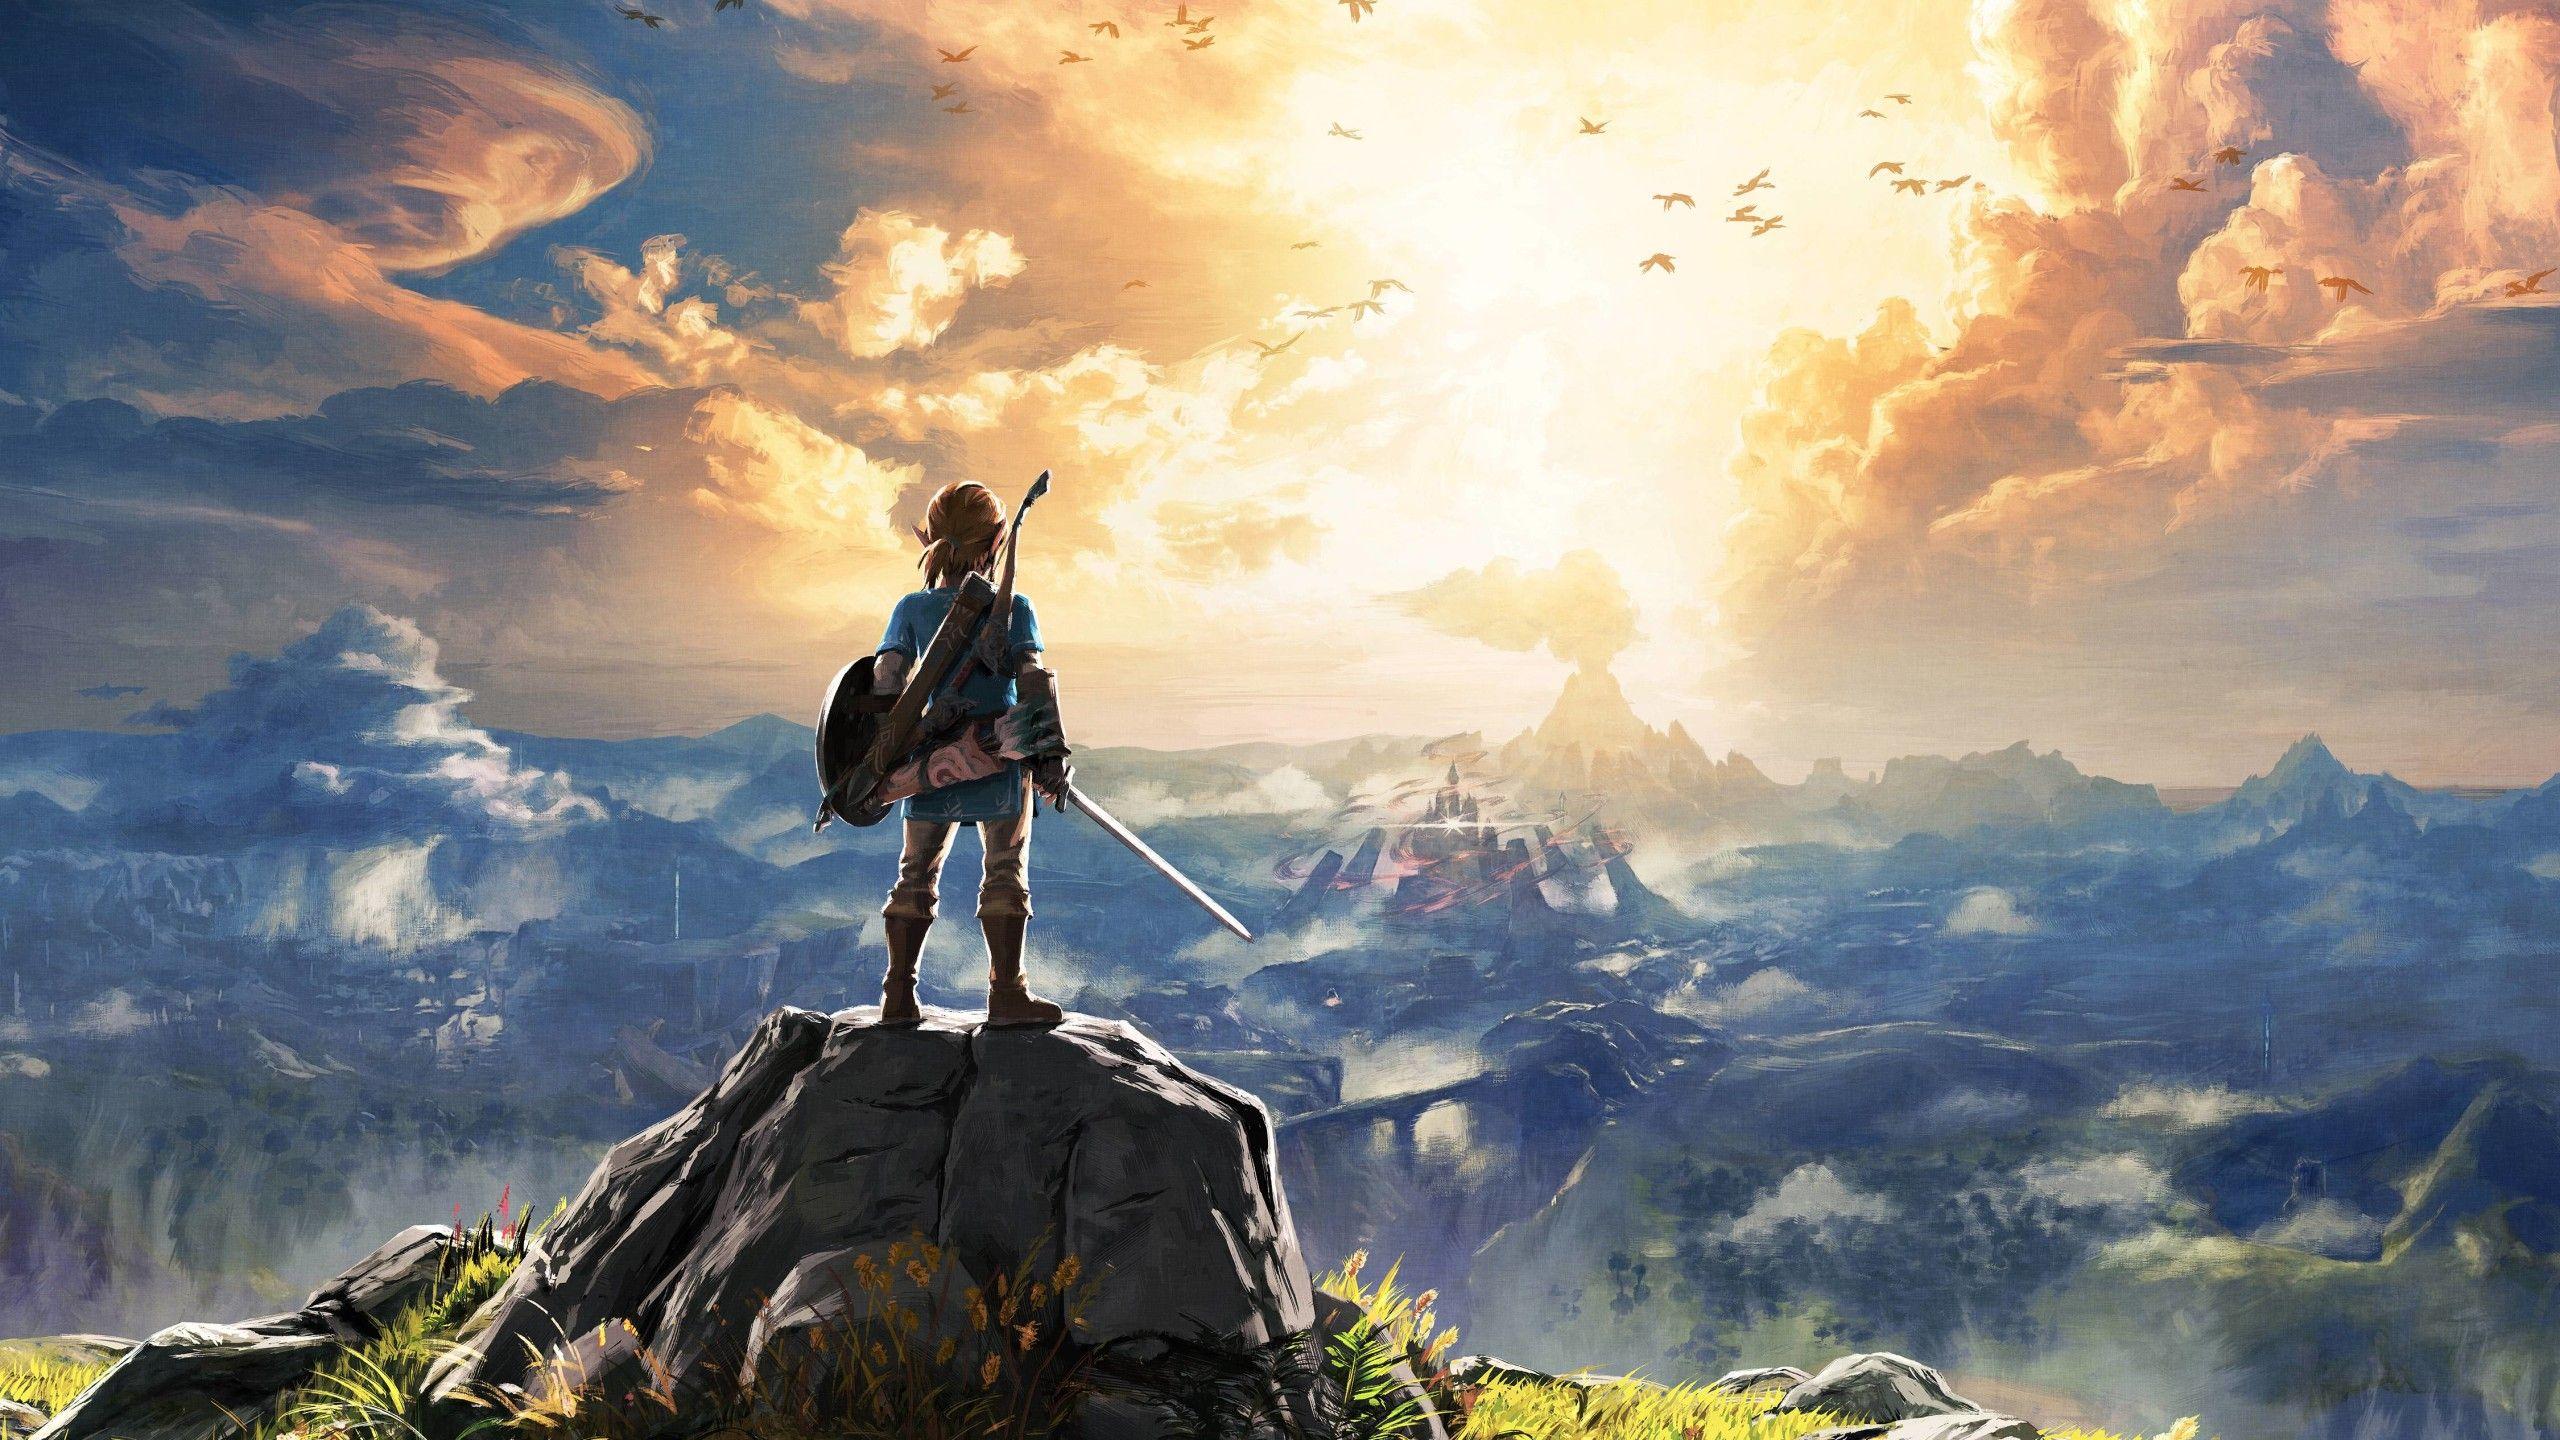 Với độ phân giải 2560 x 1440, những bức hình nền Zelda này sẽ khiến cho bạn như đang bay vào một thế giới khác. Với vẻ đẹp của công viên Hyrule, những chi tiết về nhân vật Link và Zelda, bạn sẽ có cảm giác như mình đang đóng vai trò hành trình giải cứu thế giới trong dòng game huyền thoại này.